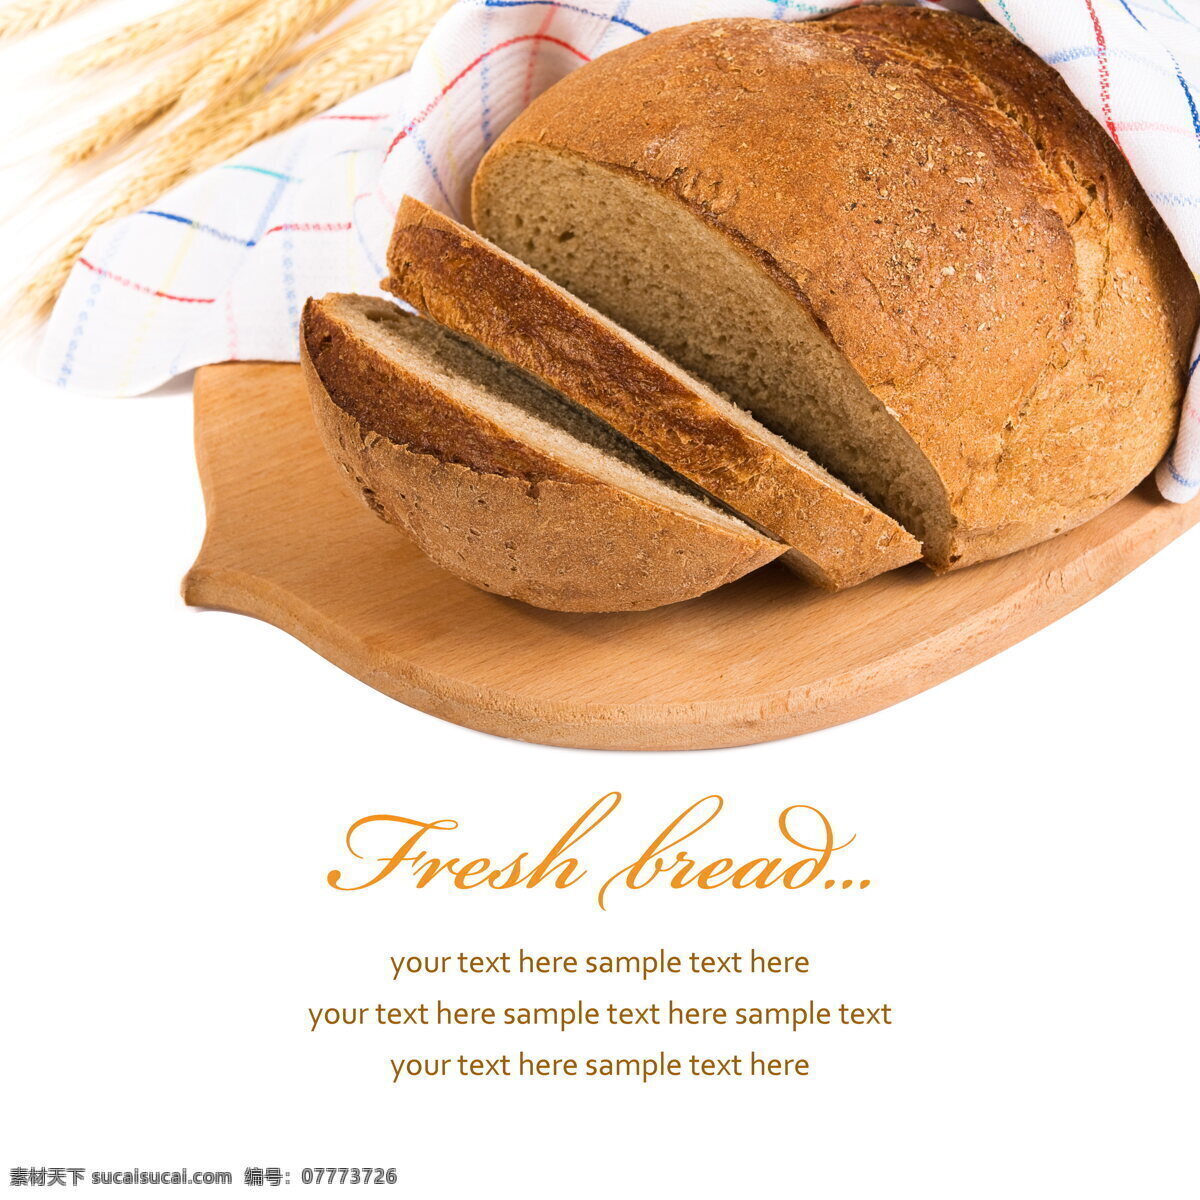 全麦面包 砧板 面包 烤面包 面包片 切片 粗粮 麦穗 木板 菜板 食物 美食 餐饮美食图片 餐饮美食 西餐美食